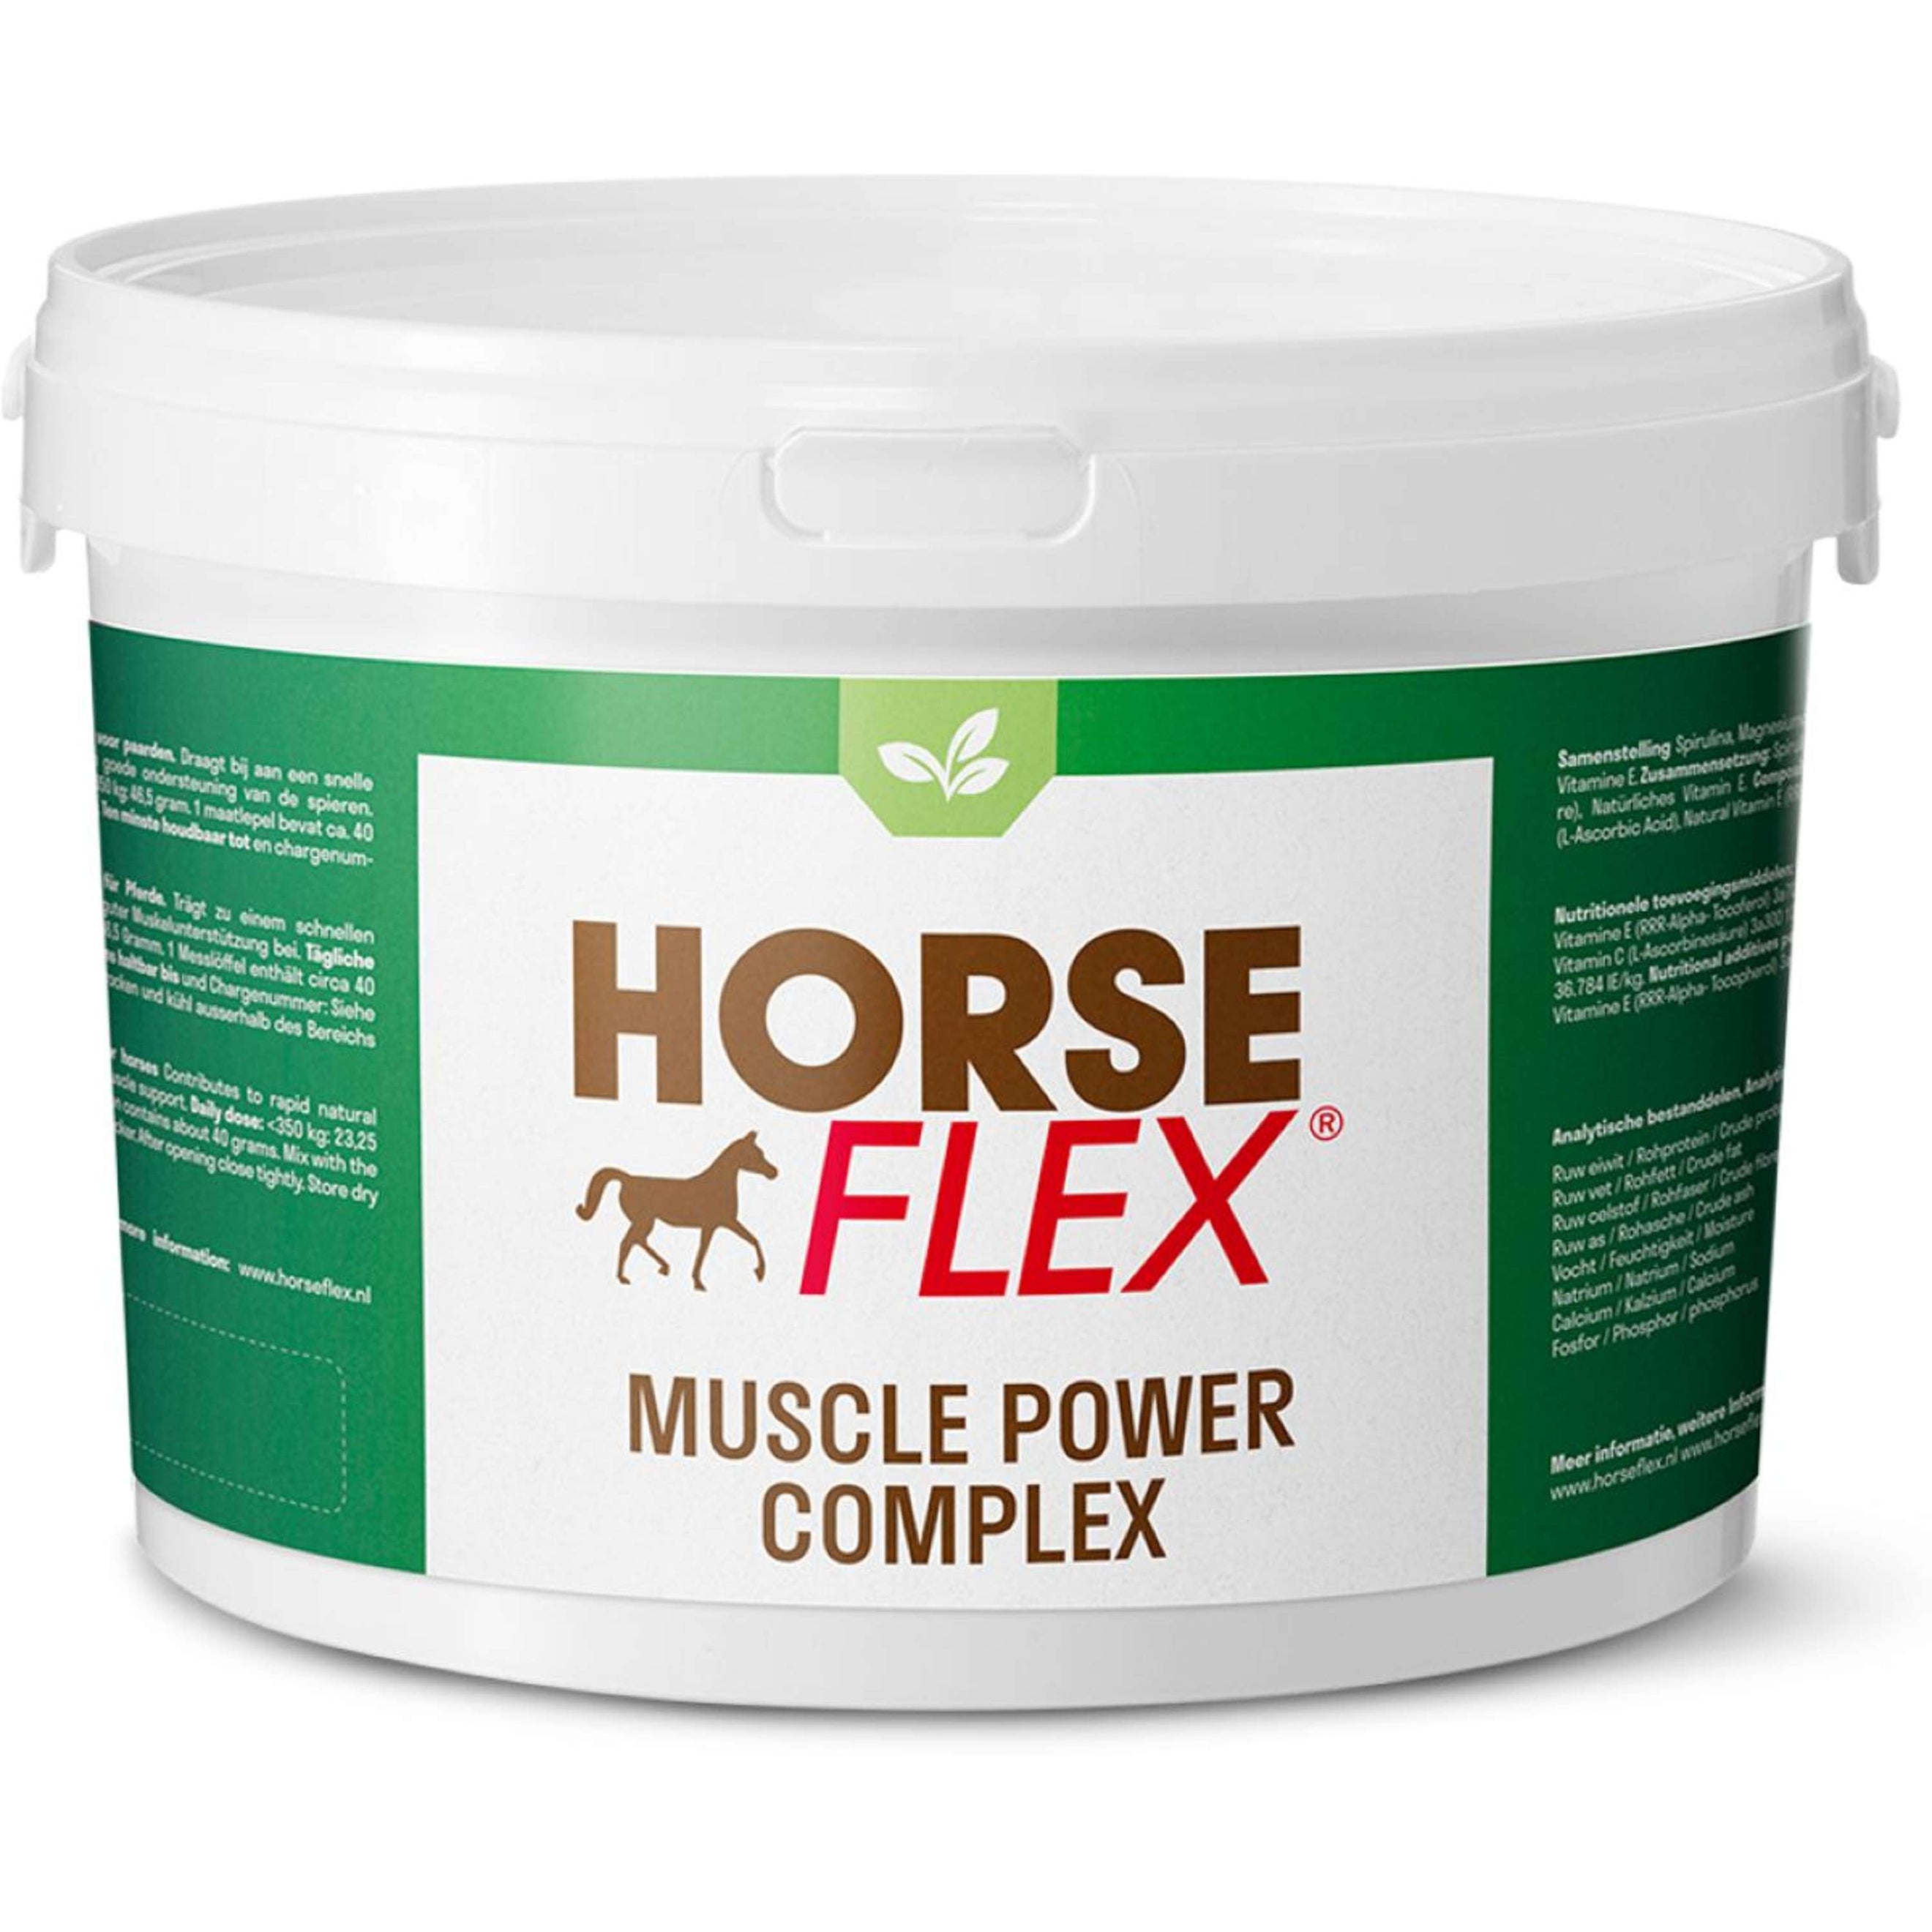 Horseflex Muscle Power Complex